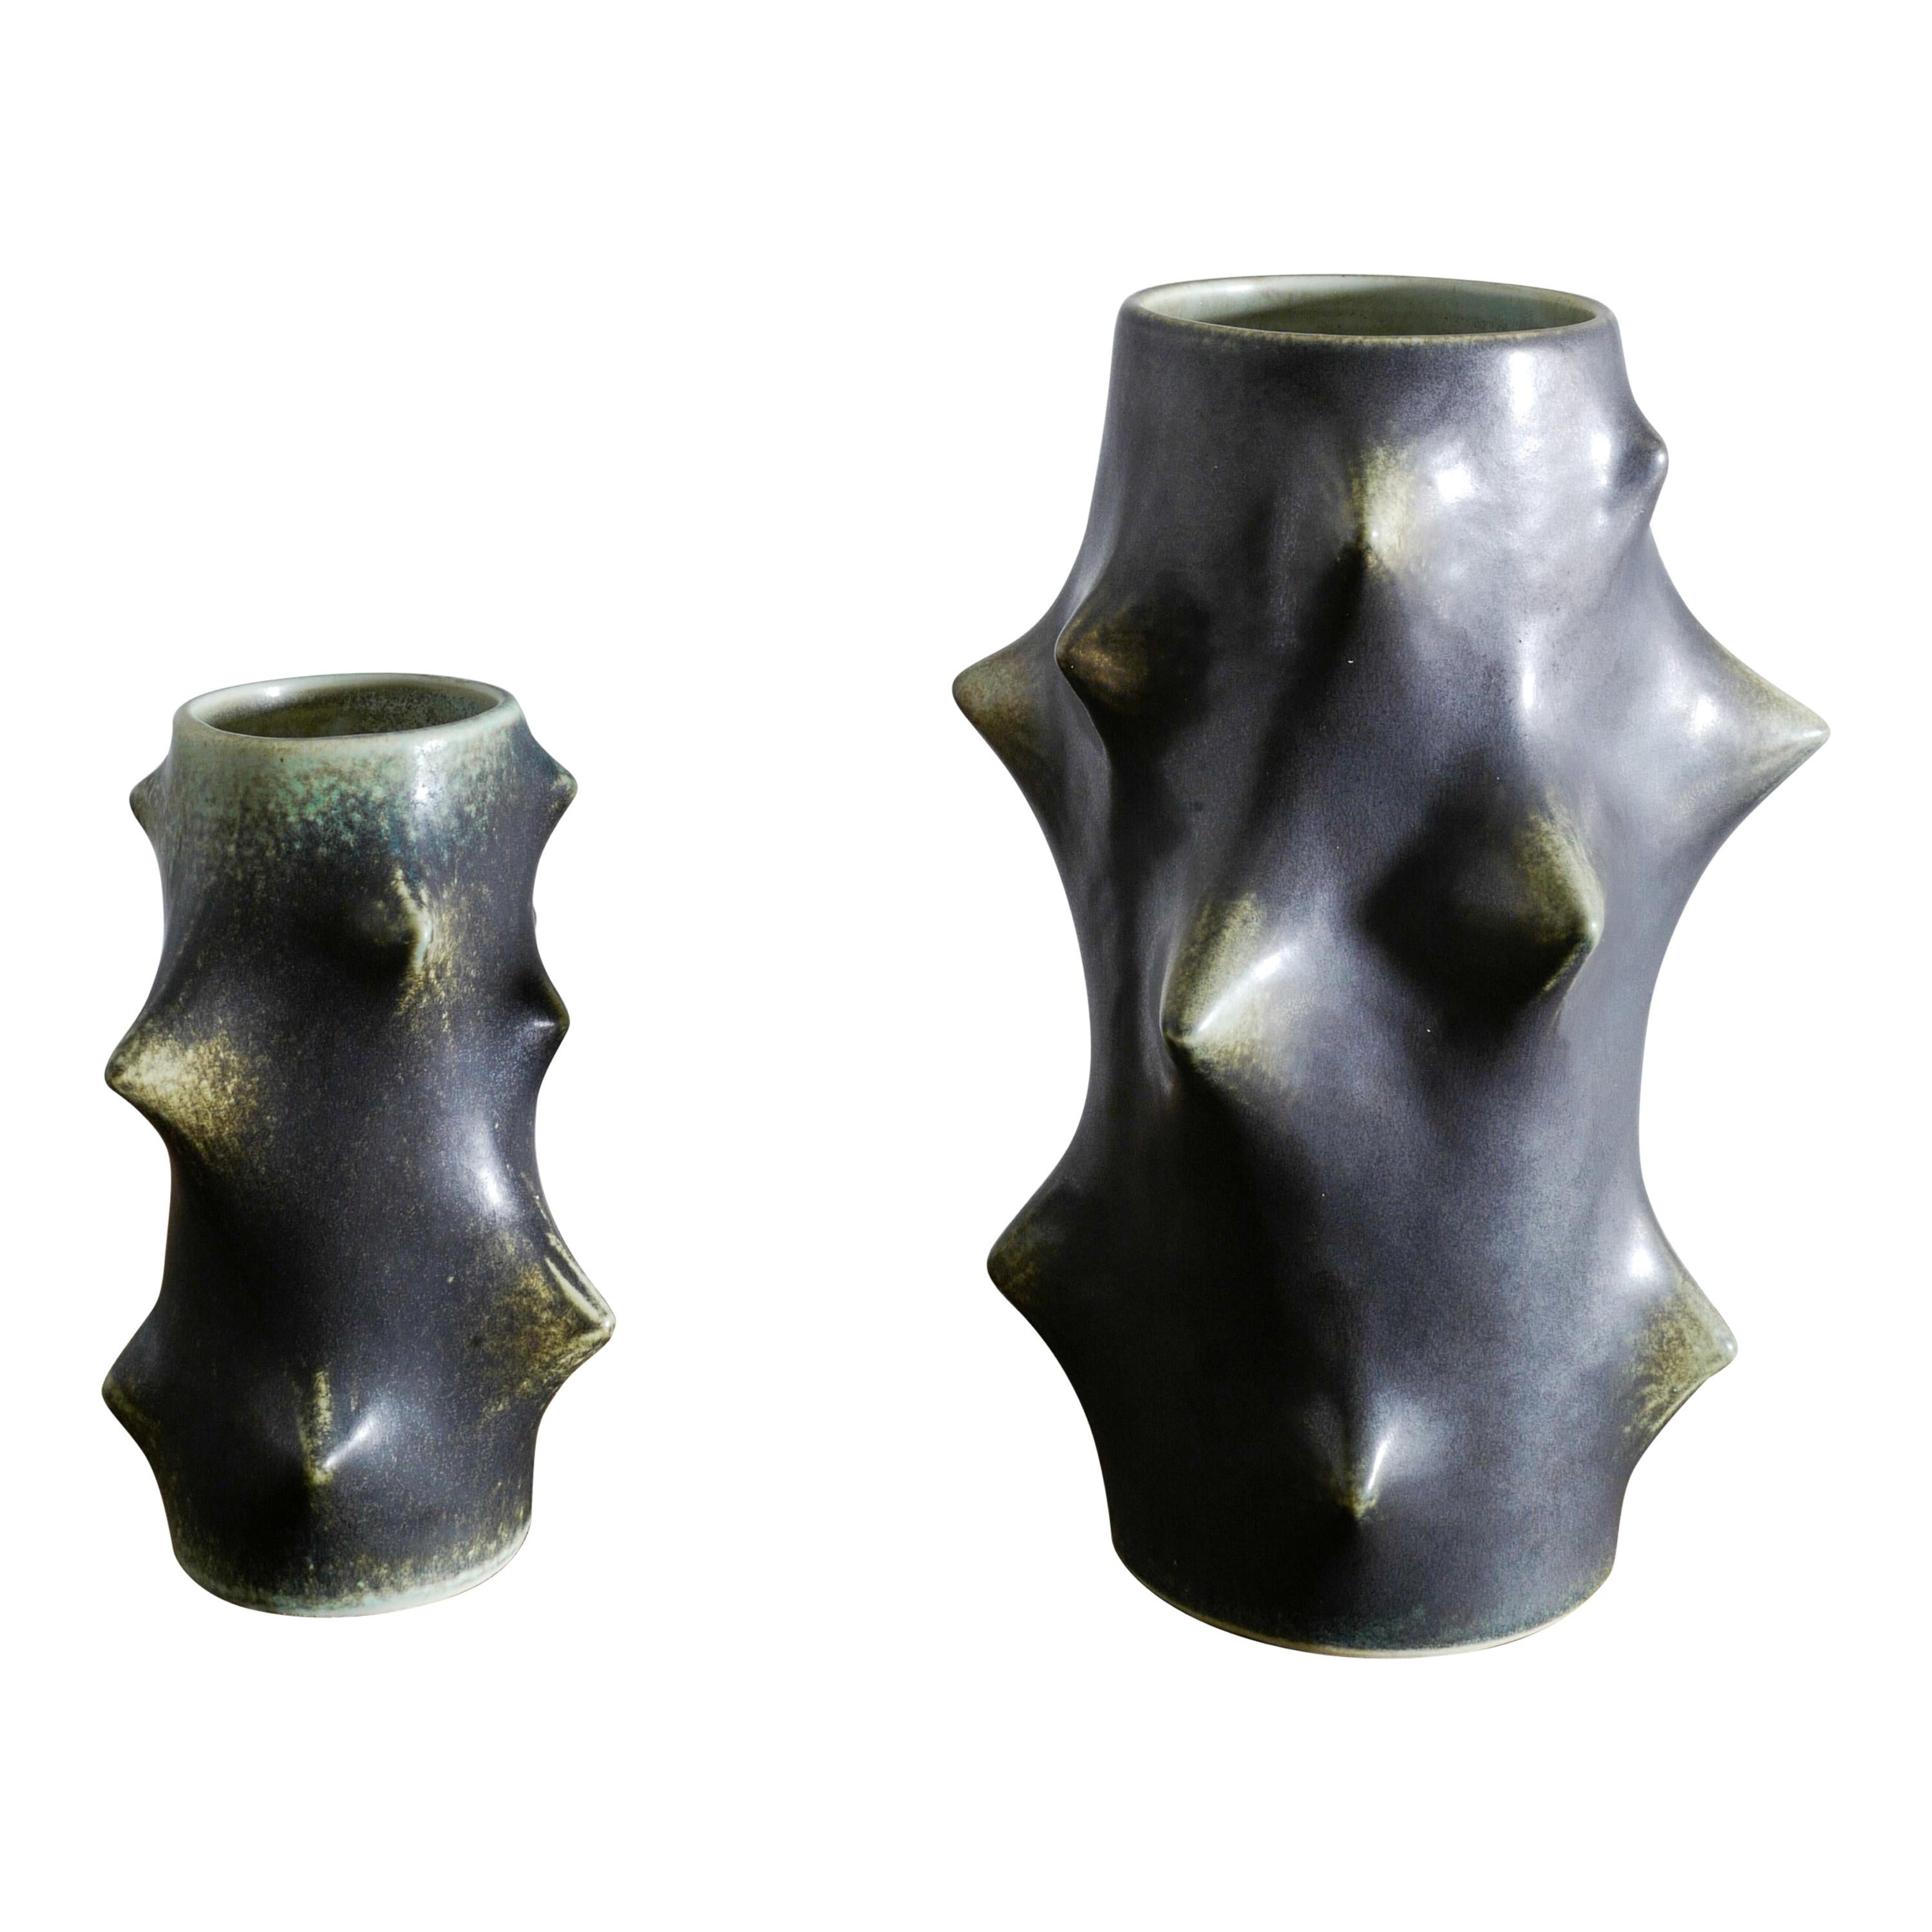 Pair of Dark Green Knud Basse Thorn Vases Produced by Michael Andersen, Denmark